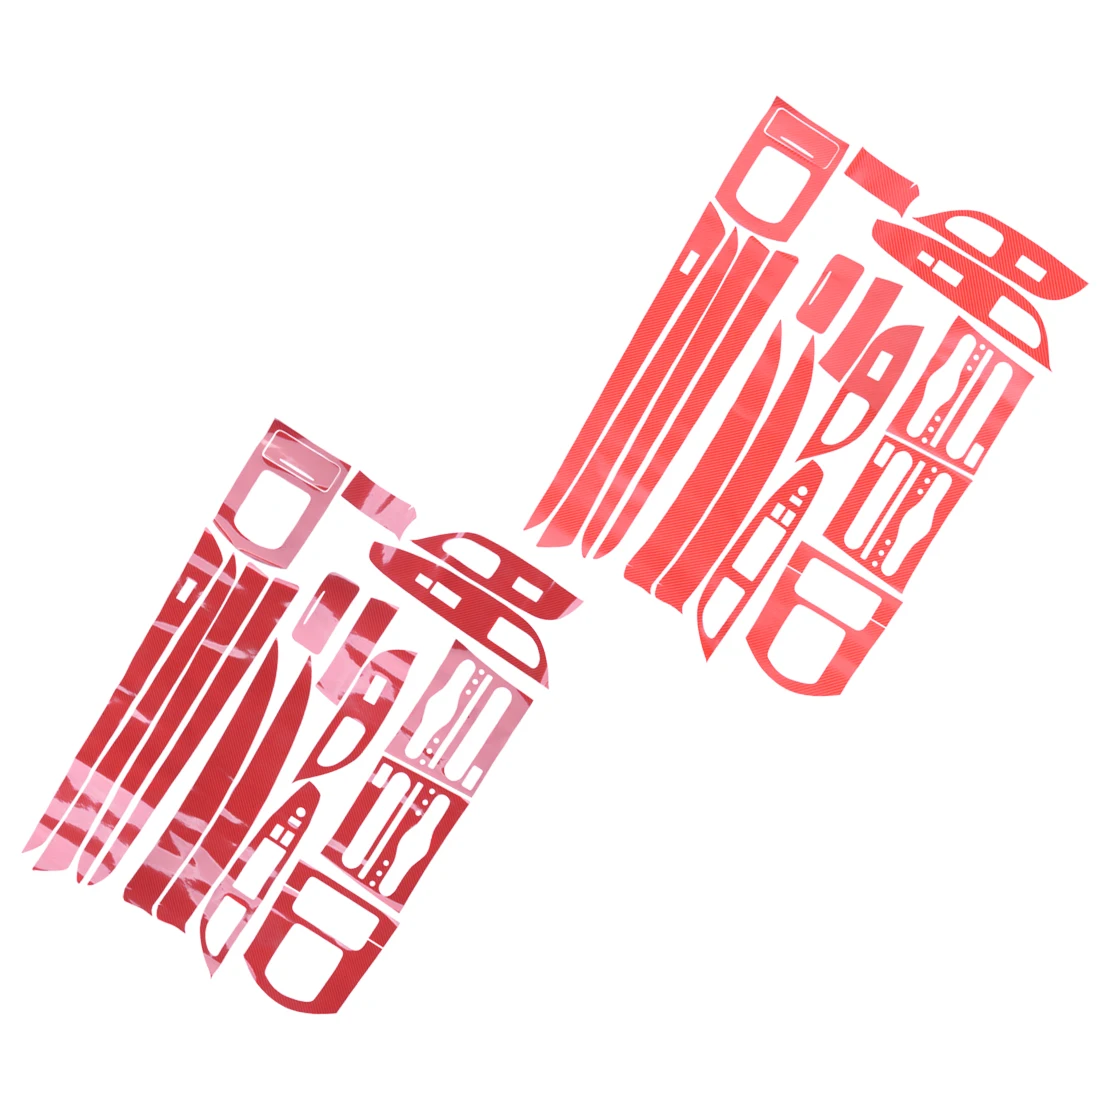 ثلاثية الأبعاد/5D الأحمر ألياف الكربون نمط الفينيل سيارة مركز لوحة الباب صب الكسوة ملصق صالح لإنفينيتي G25 G37 2008-2011 2012 2013